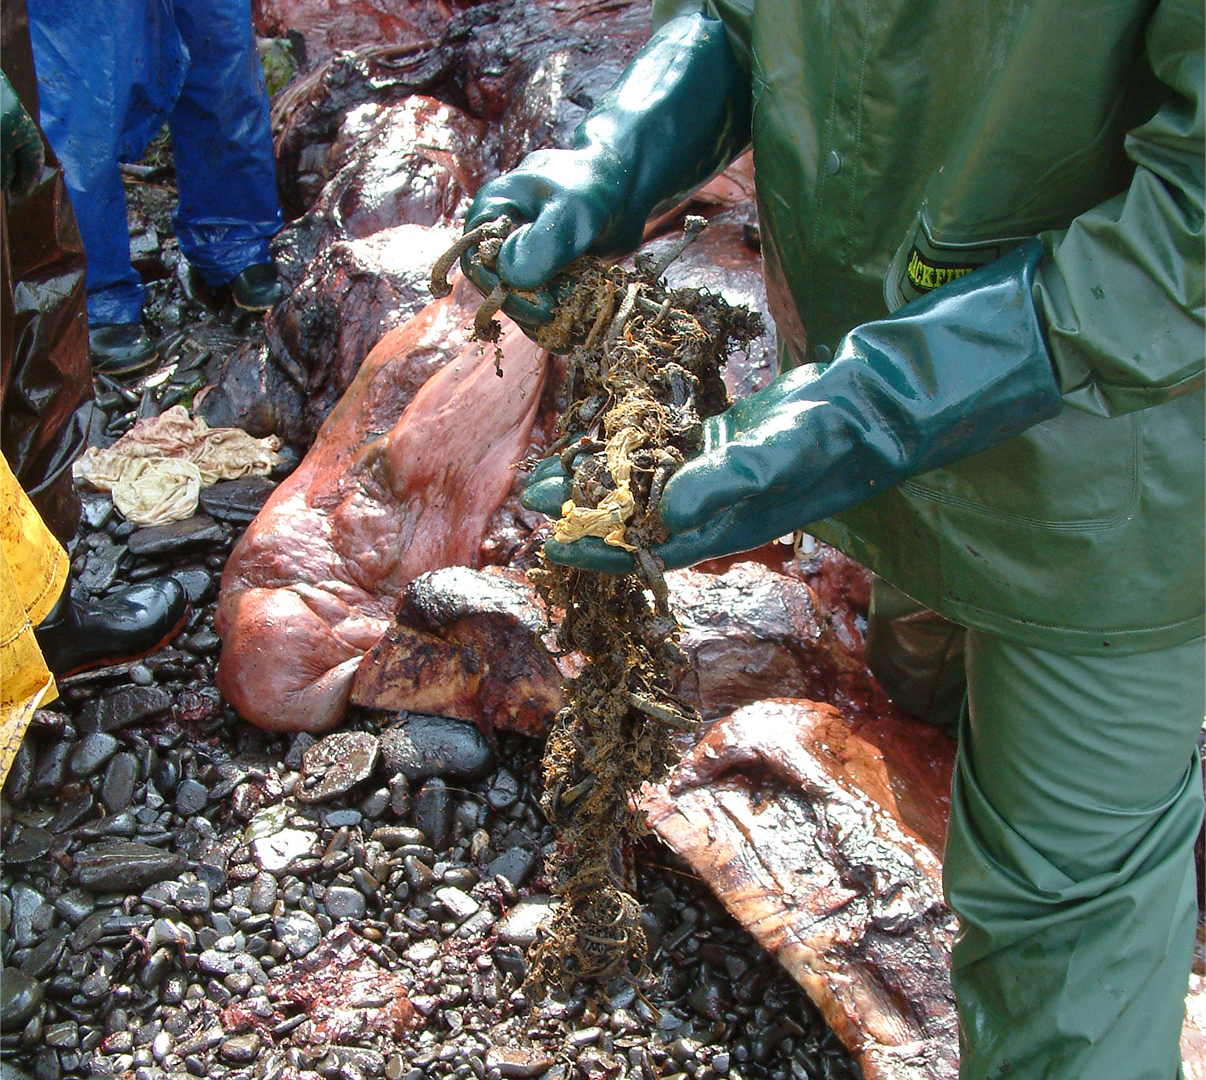 Le tube digestif du cachalot est en train d'être dépecé. Une personne en retire un amas de déchets.